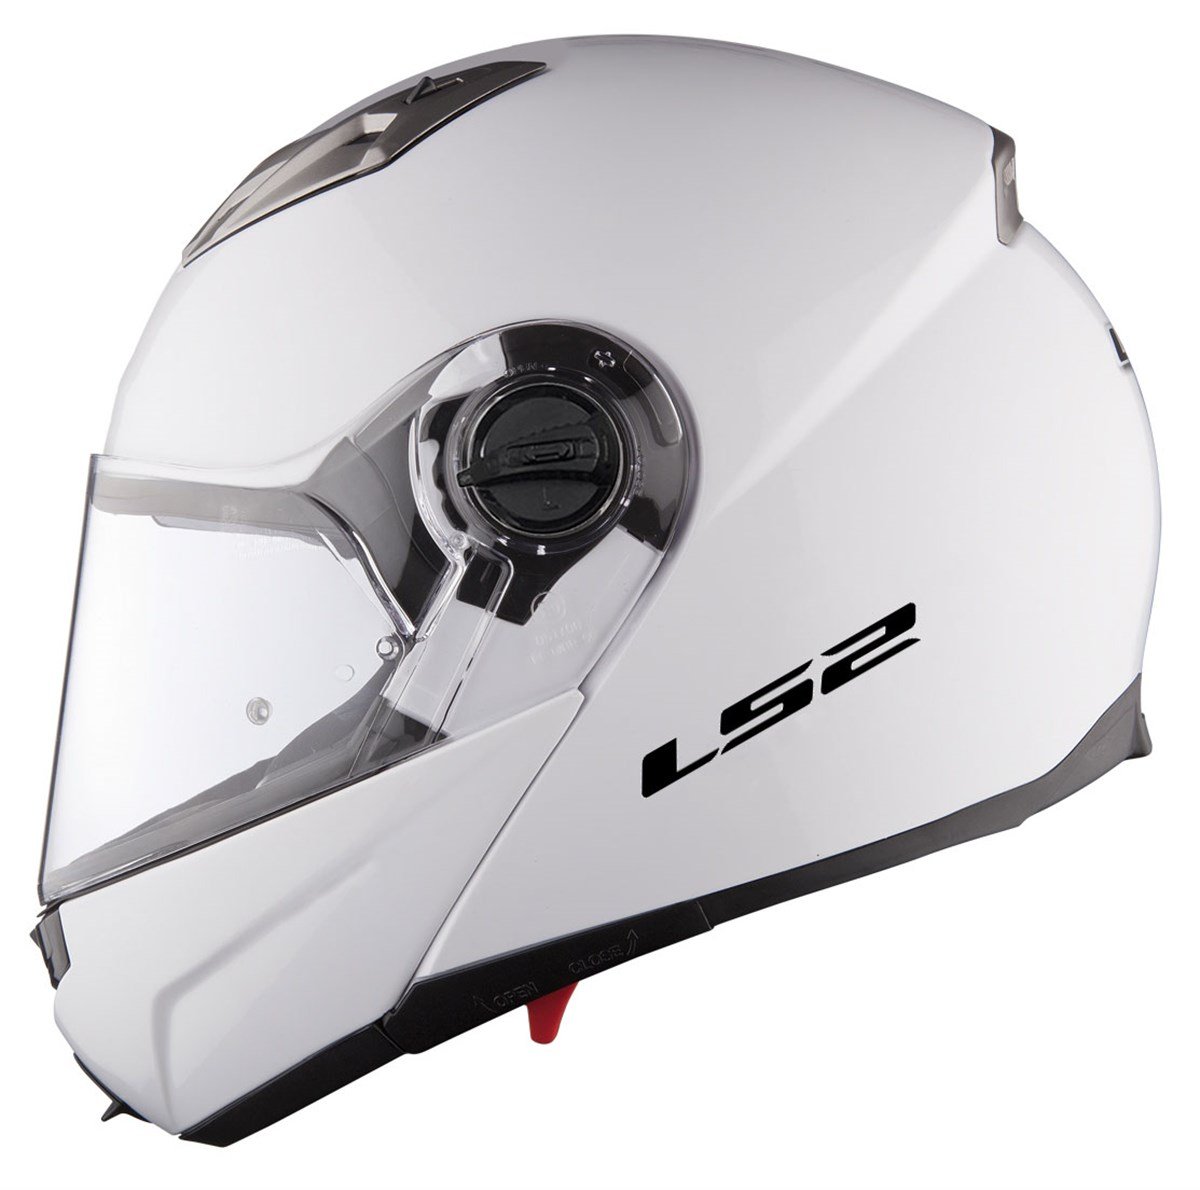 Ls2 Guroni Çene Açilir Motosiklet Kaski | Hızlı Teslimat ve Uygun Fiyat  Seçenekleri ile Vipmoto'da!